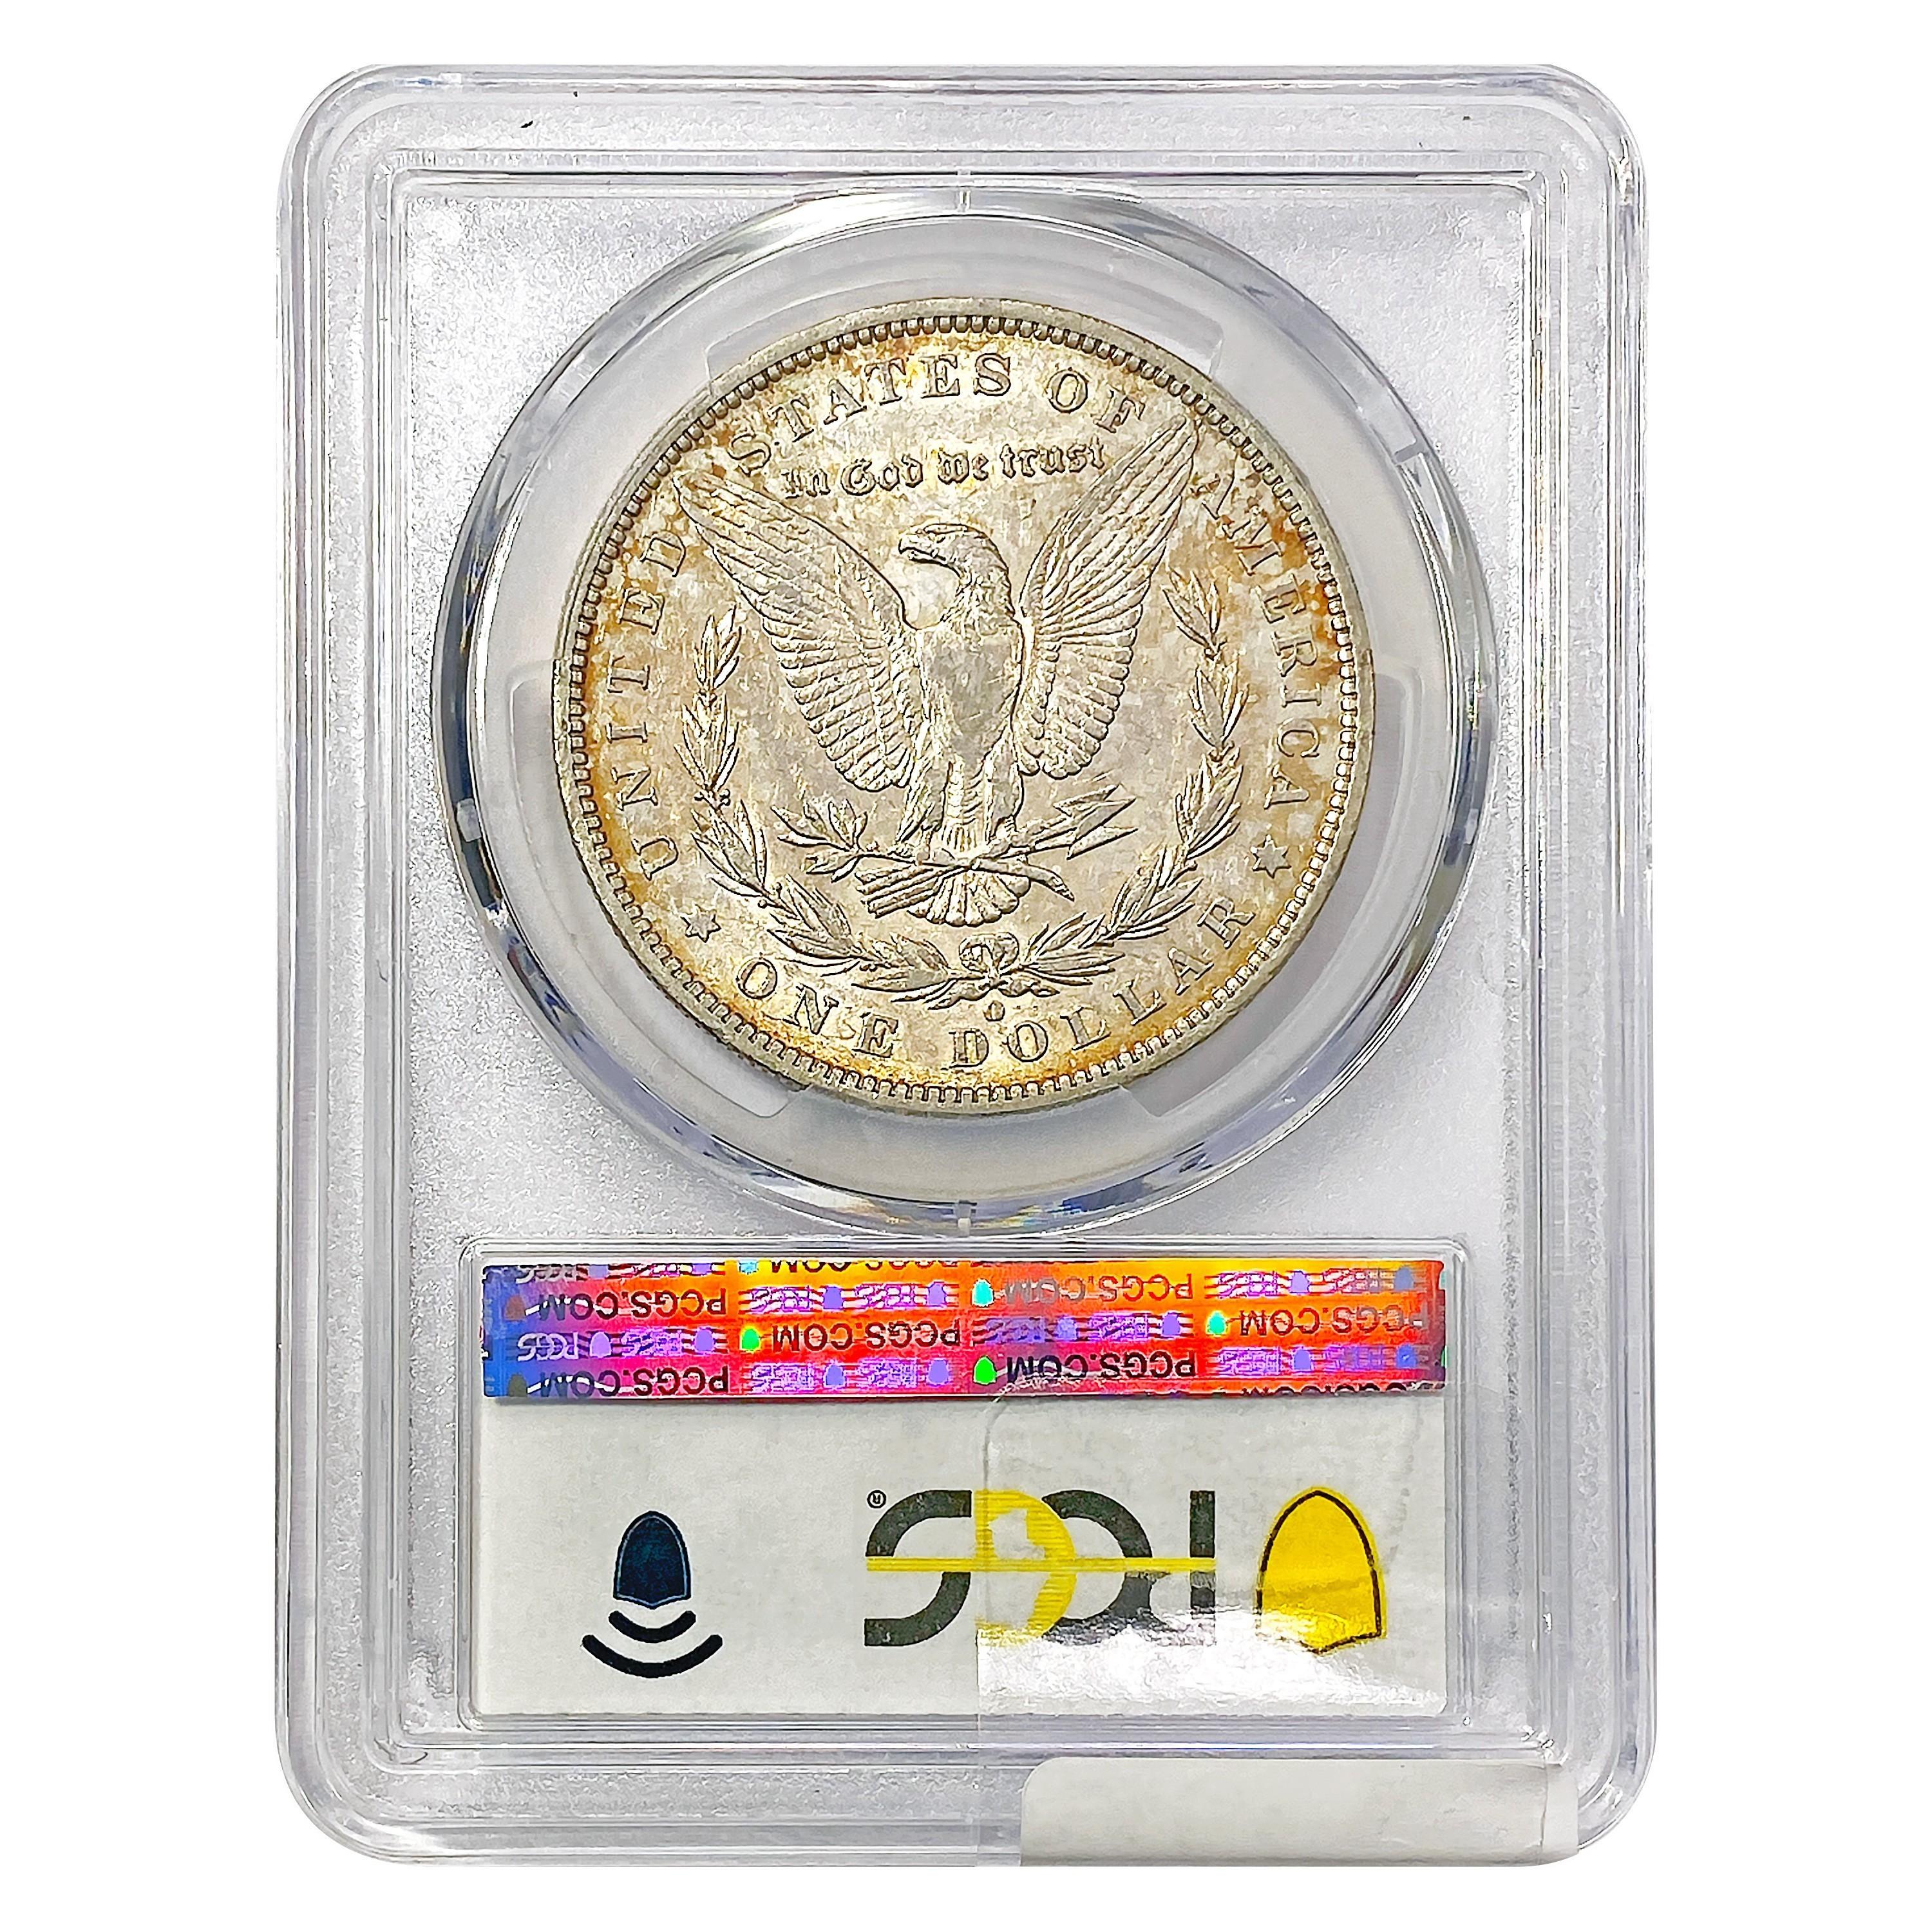 1886-O Morgan Silver Dollar PCGS AU50